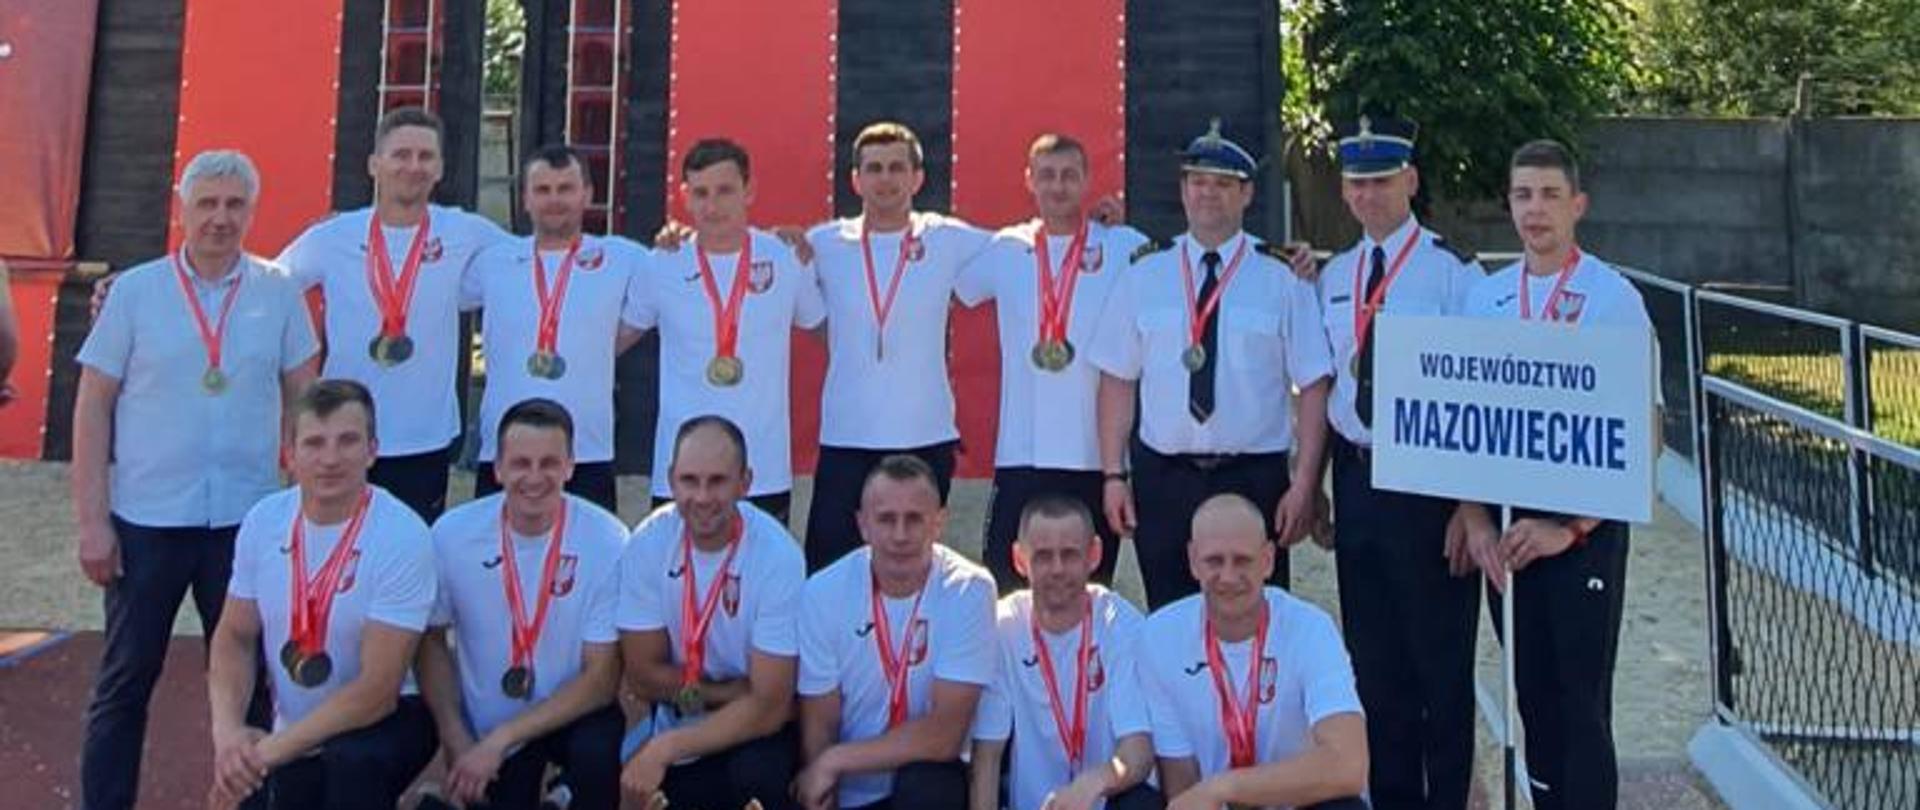 Mazowsze Mistrzami Polski w Sporcie Pożarniczym - pod wspinalnią stoją zawodnicy w białych koszulkach i dresach na szyi z medalami, przed nimi stoją na bieżni puchary i dyplomy